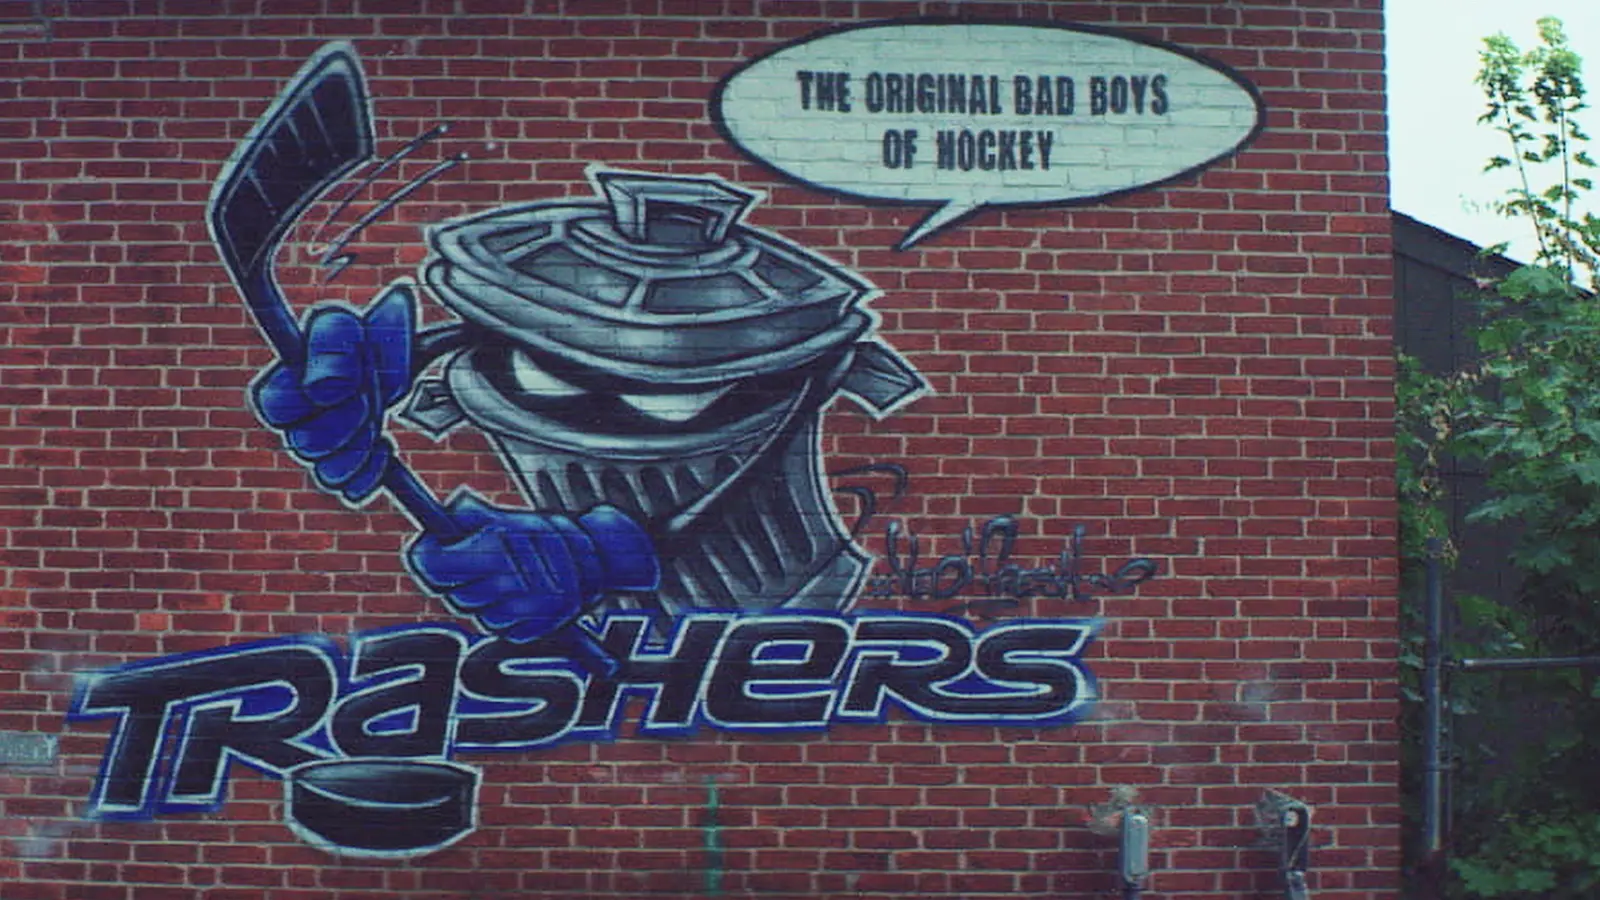 Graffiti art of the Trashers.